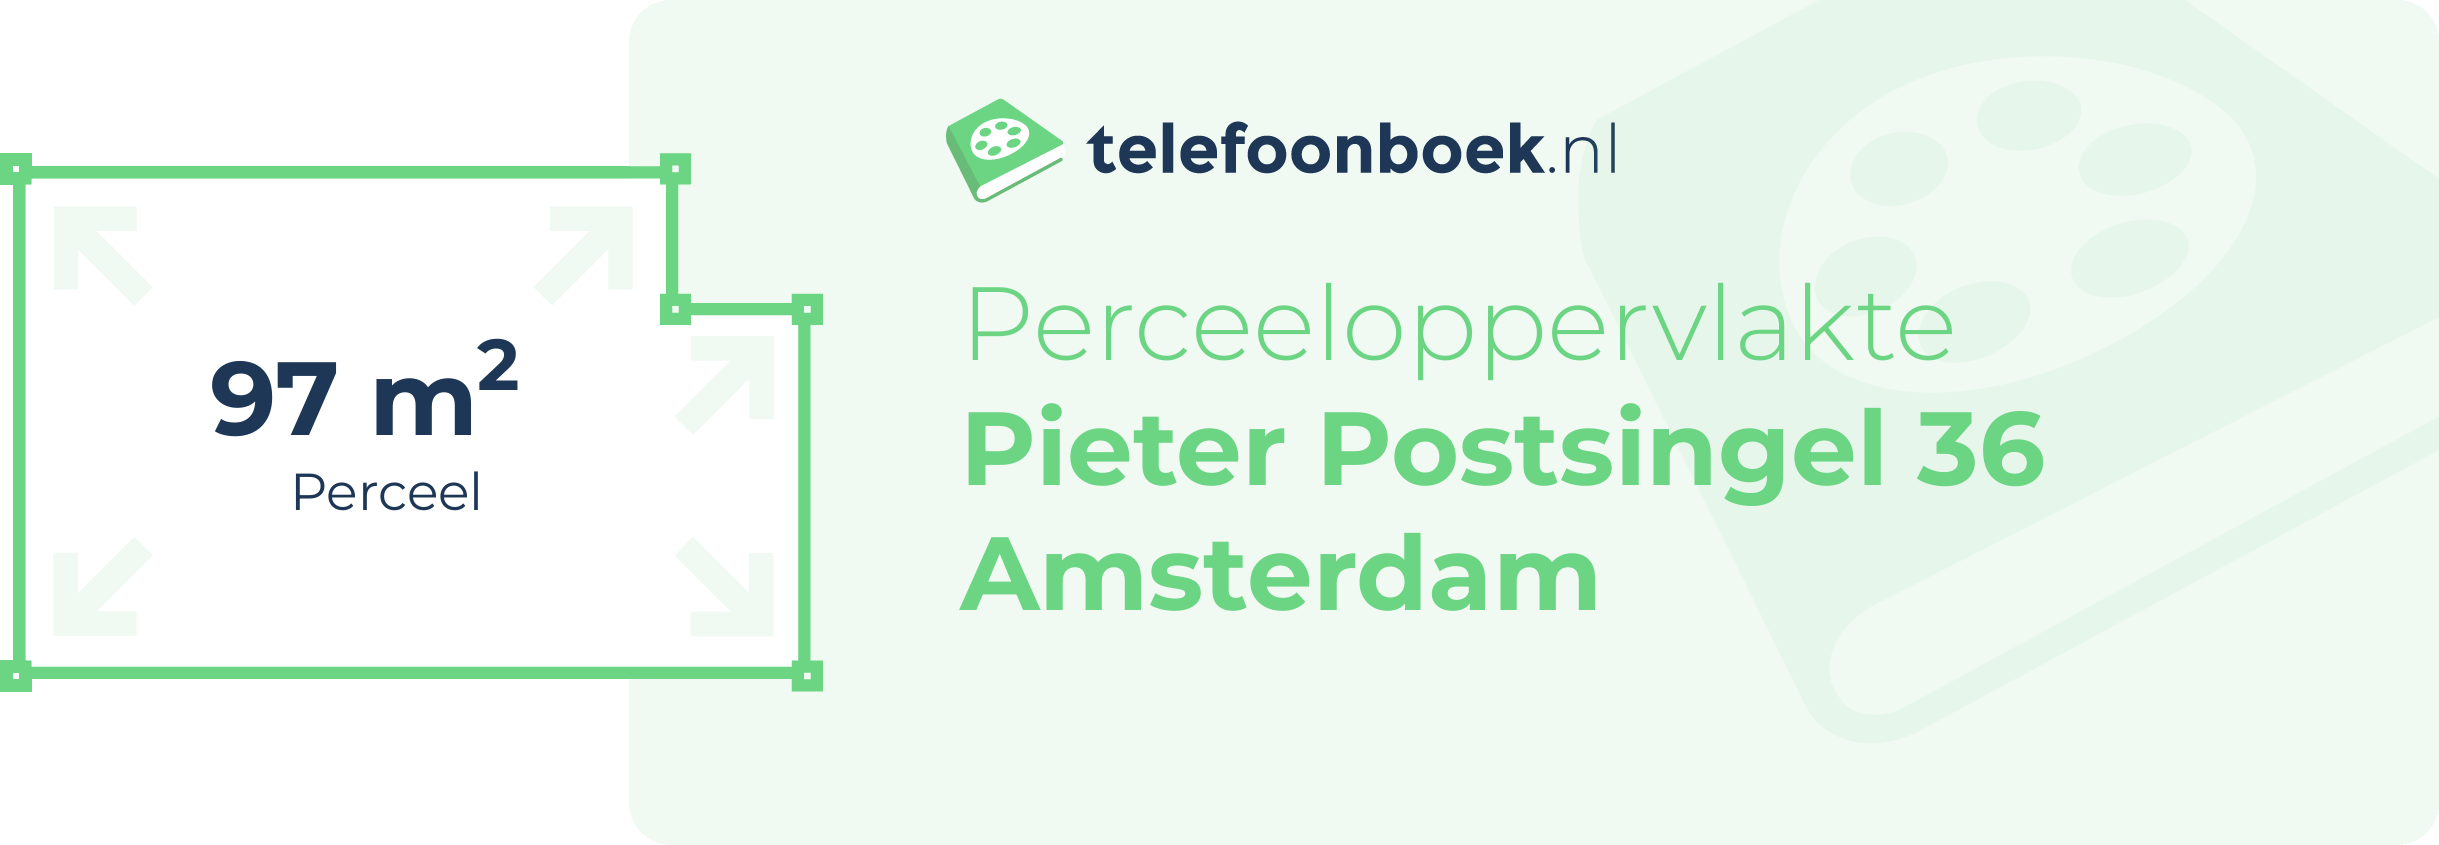 Perceeloppervlakte Pieter Postsingel 36 Amsterdam